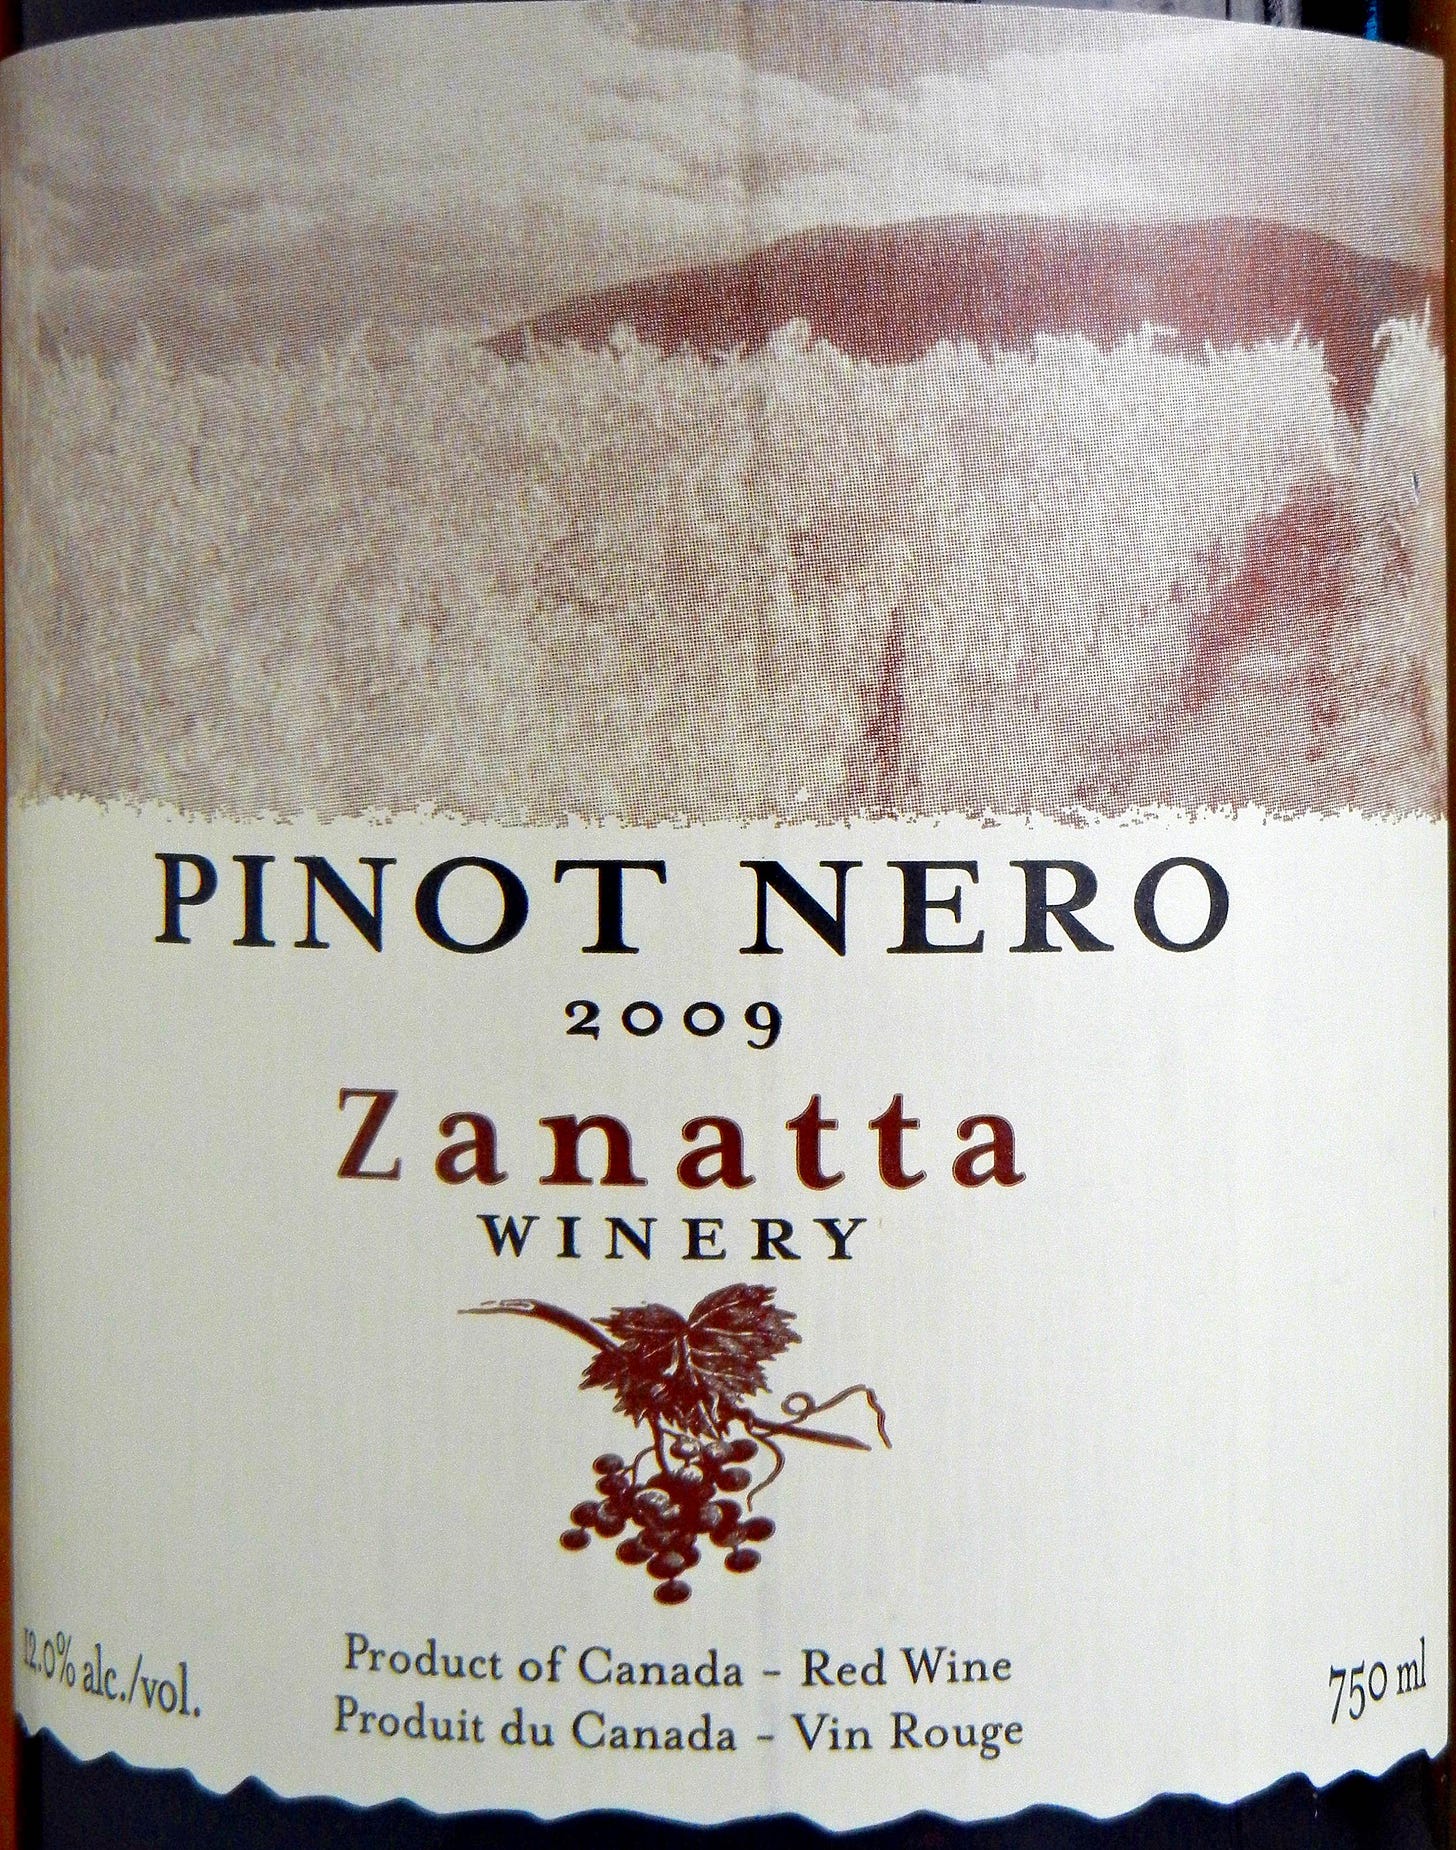 Zanatta Pinot Nero 2009 Label - BC Pinot Noir Tasting Review 26